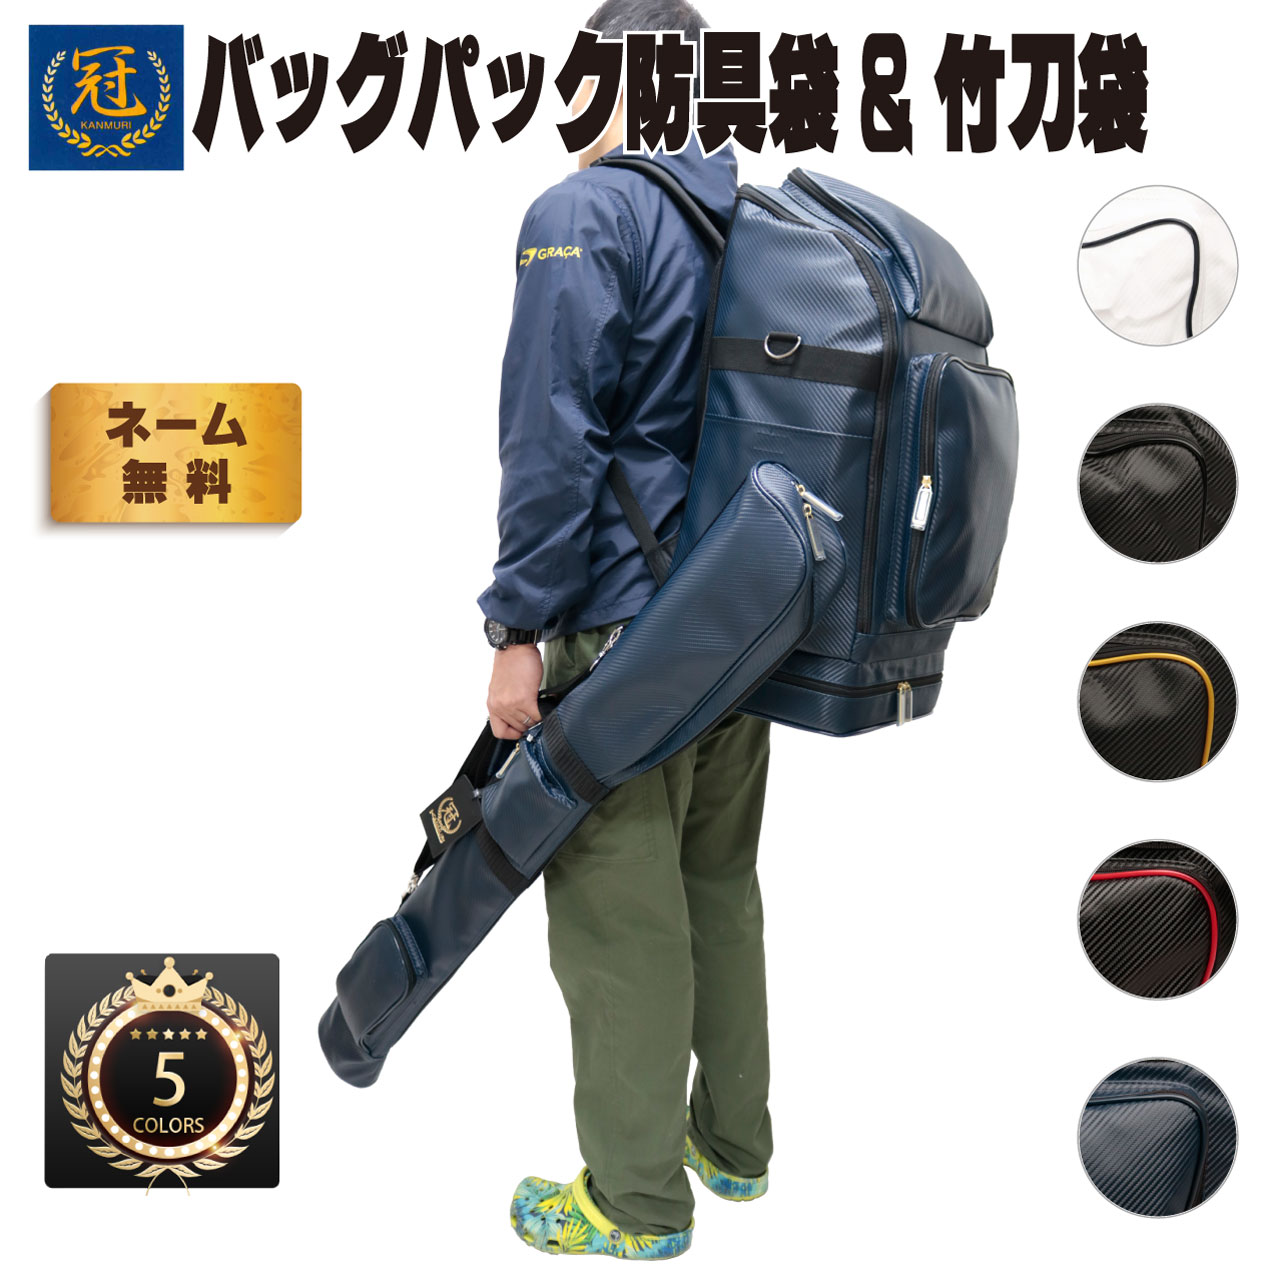 剣道防具コム 冠防具袋 KENDO バッグパック (ホワイト, フリー)のはバッグ・ケースです。 剣道防具コム 冠防具袋 KENDO バッグパック (ホワイト, フリー) - 3